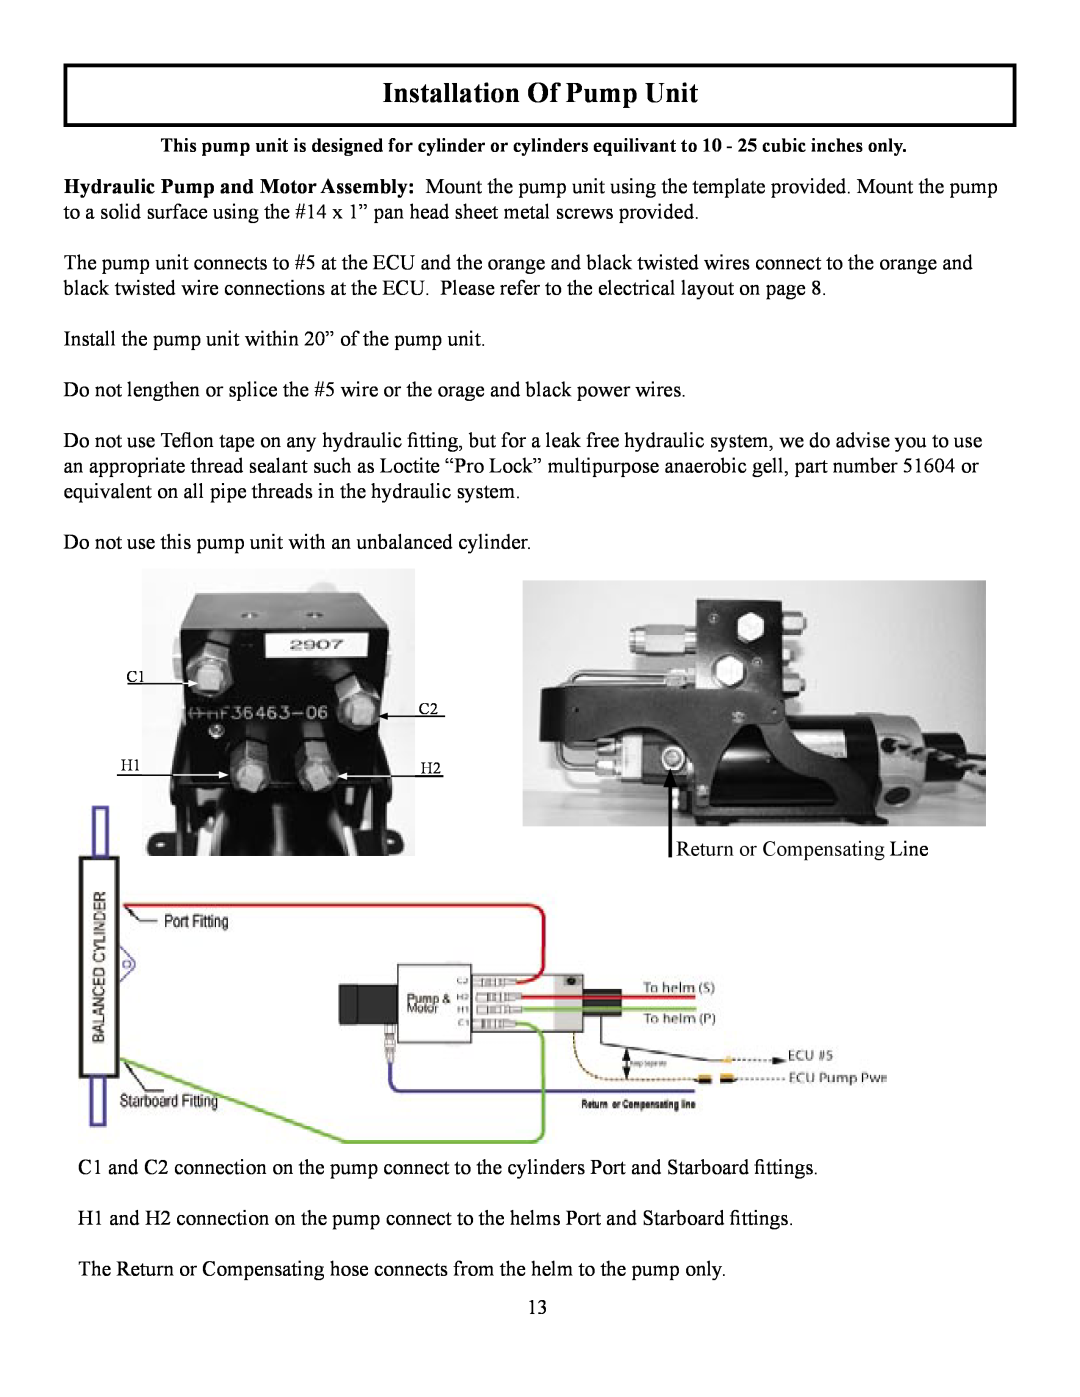 Garmin TR-1 manual Installation Of Pump Unit 